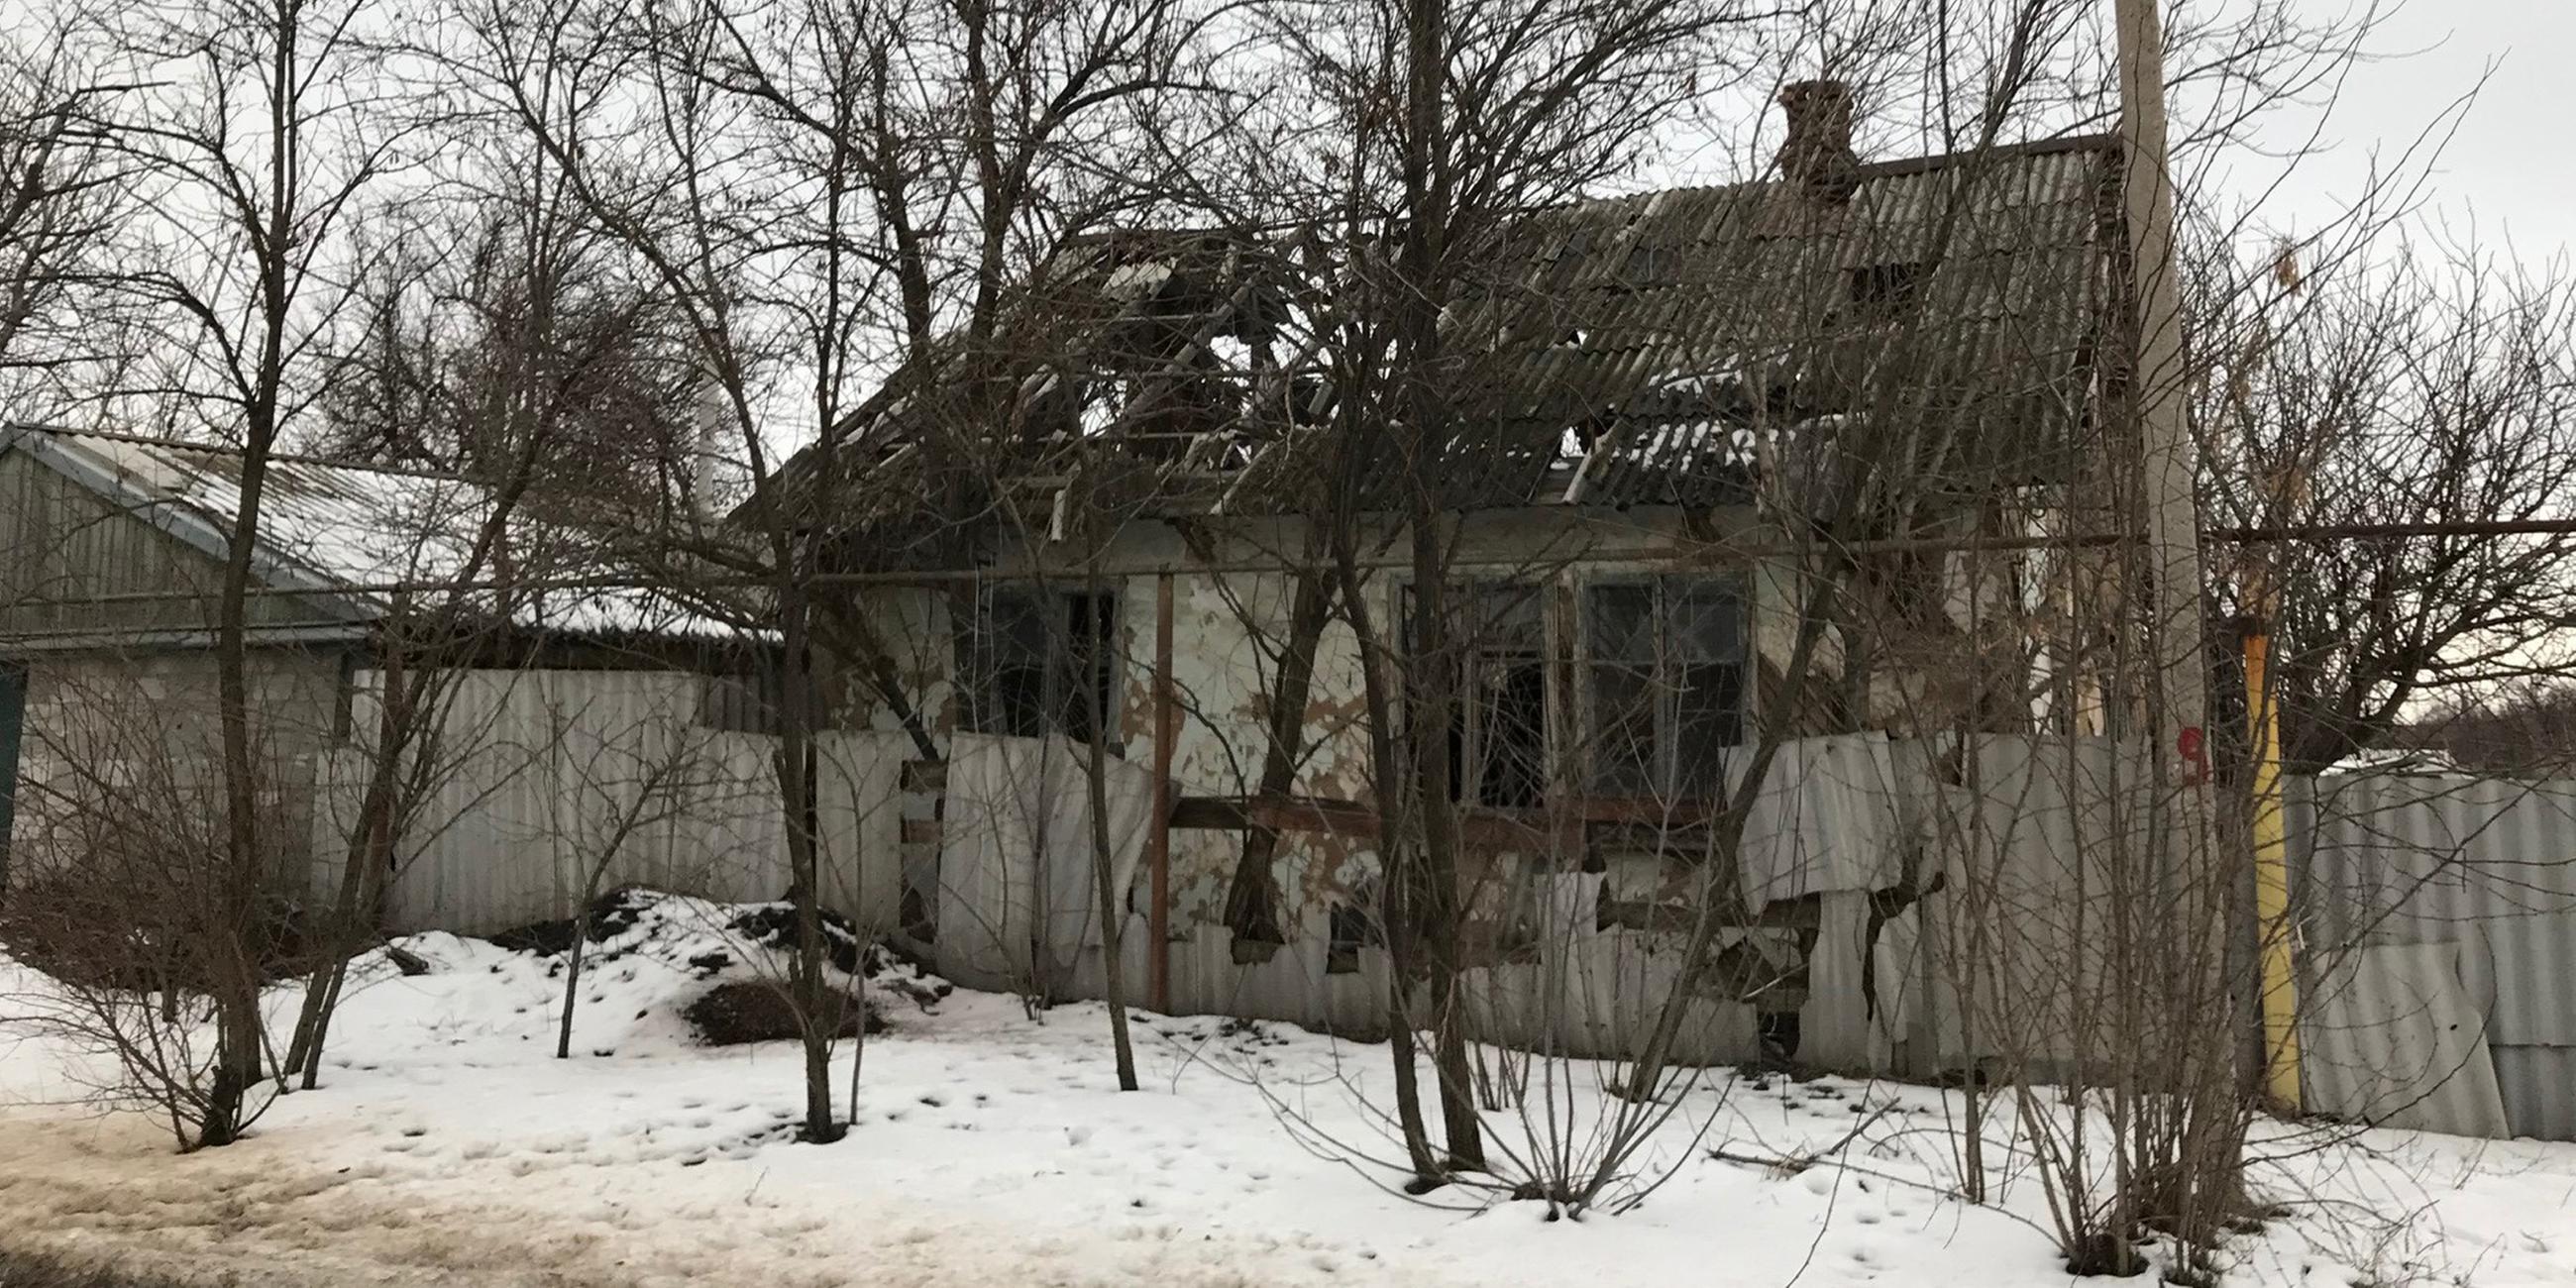 Ein zerstörtes Haus